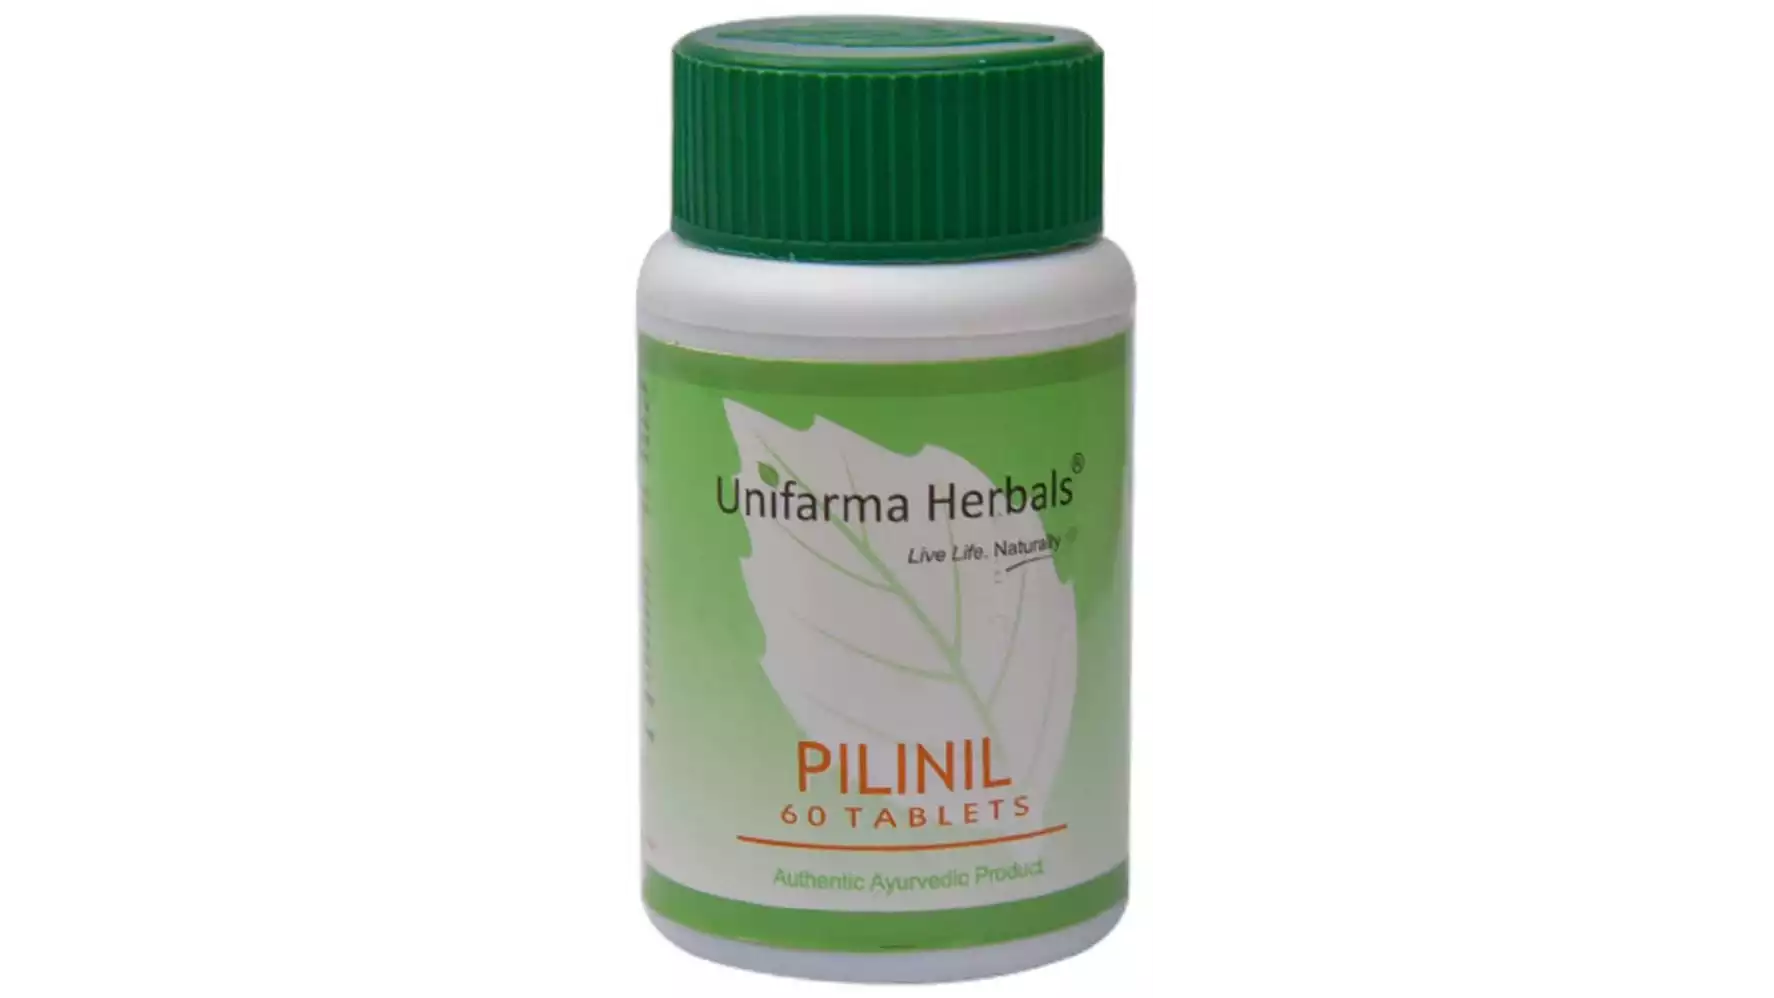 Unifarma Herbals Pilinil (60tab)